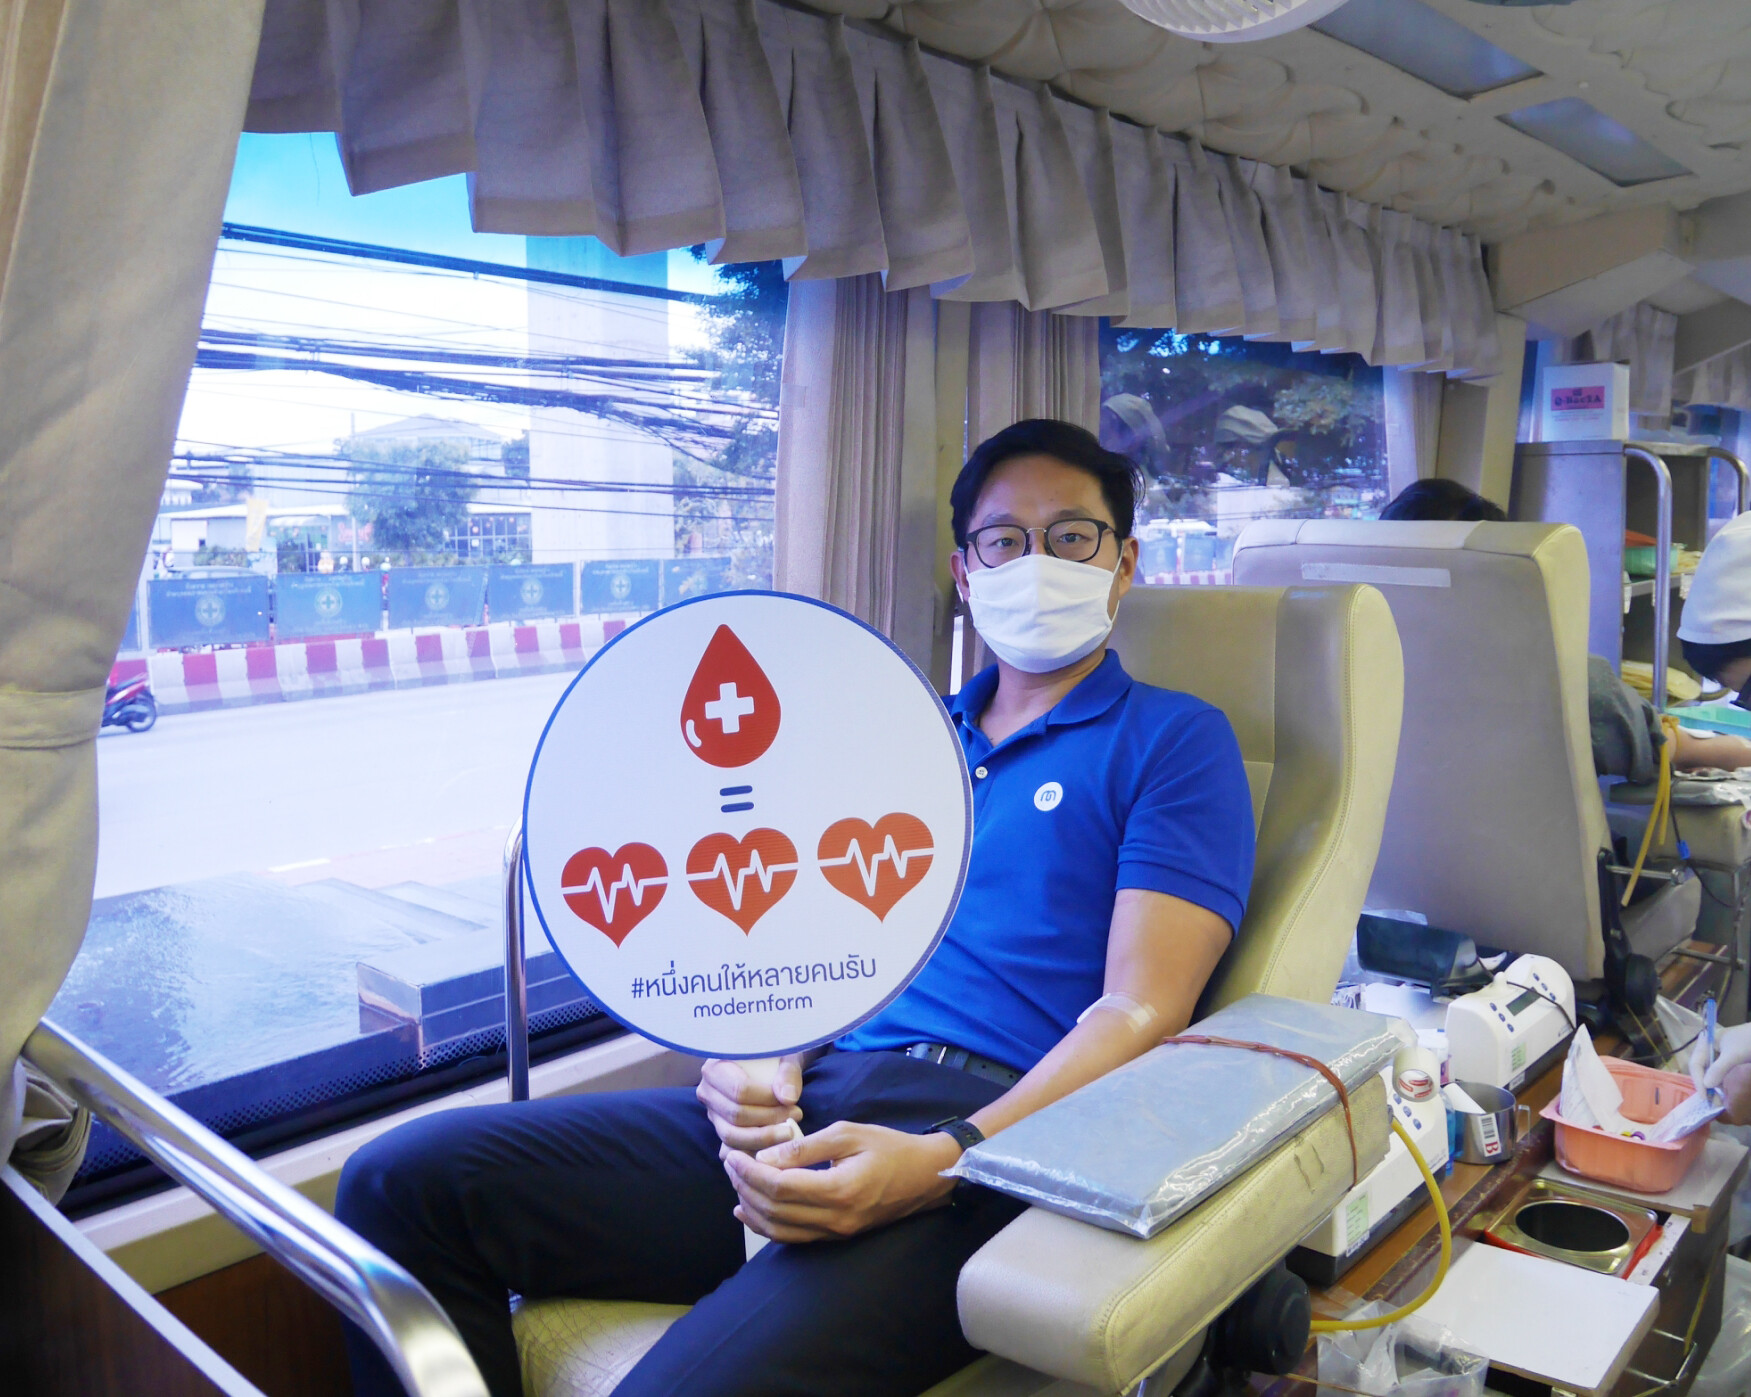 โมเดอร์นฟอร์มจัดกิจกรรม "ปันฝันปันรัก Blood Donation 2020" บริจาคโลหิตให้แก่สภากาชาดไทย